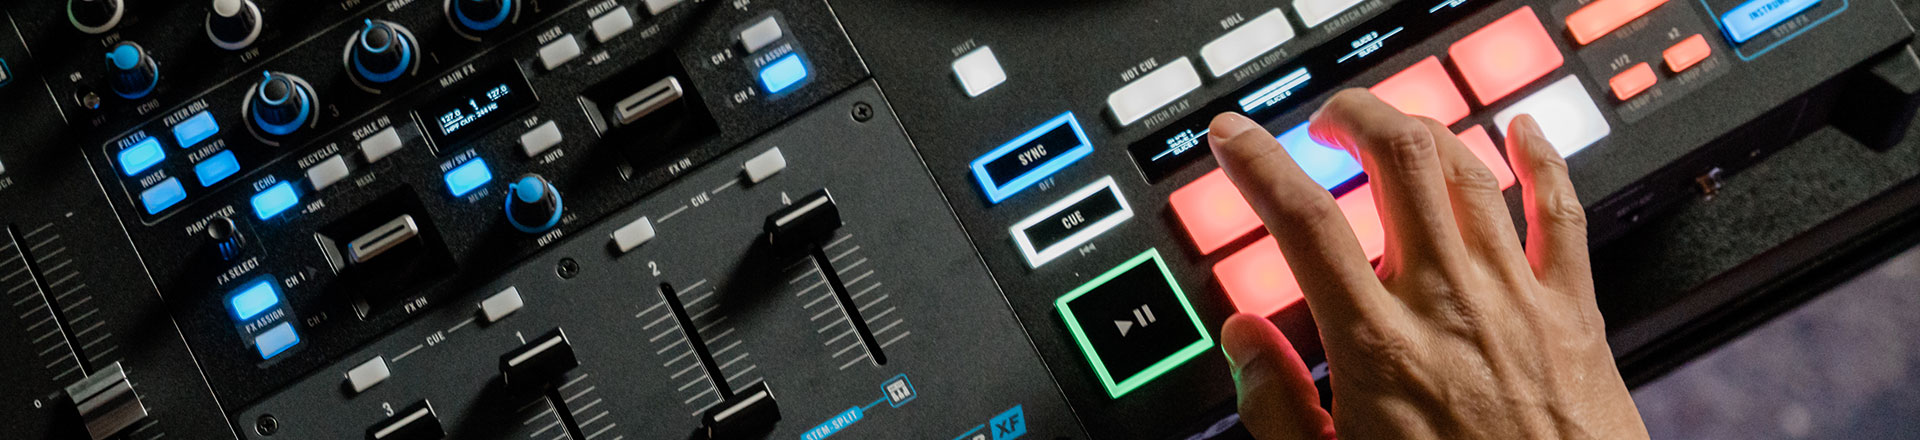 Rane Four - Nowy kontroler DJ do pracy z formatem Stem